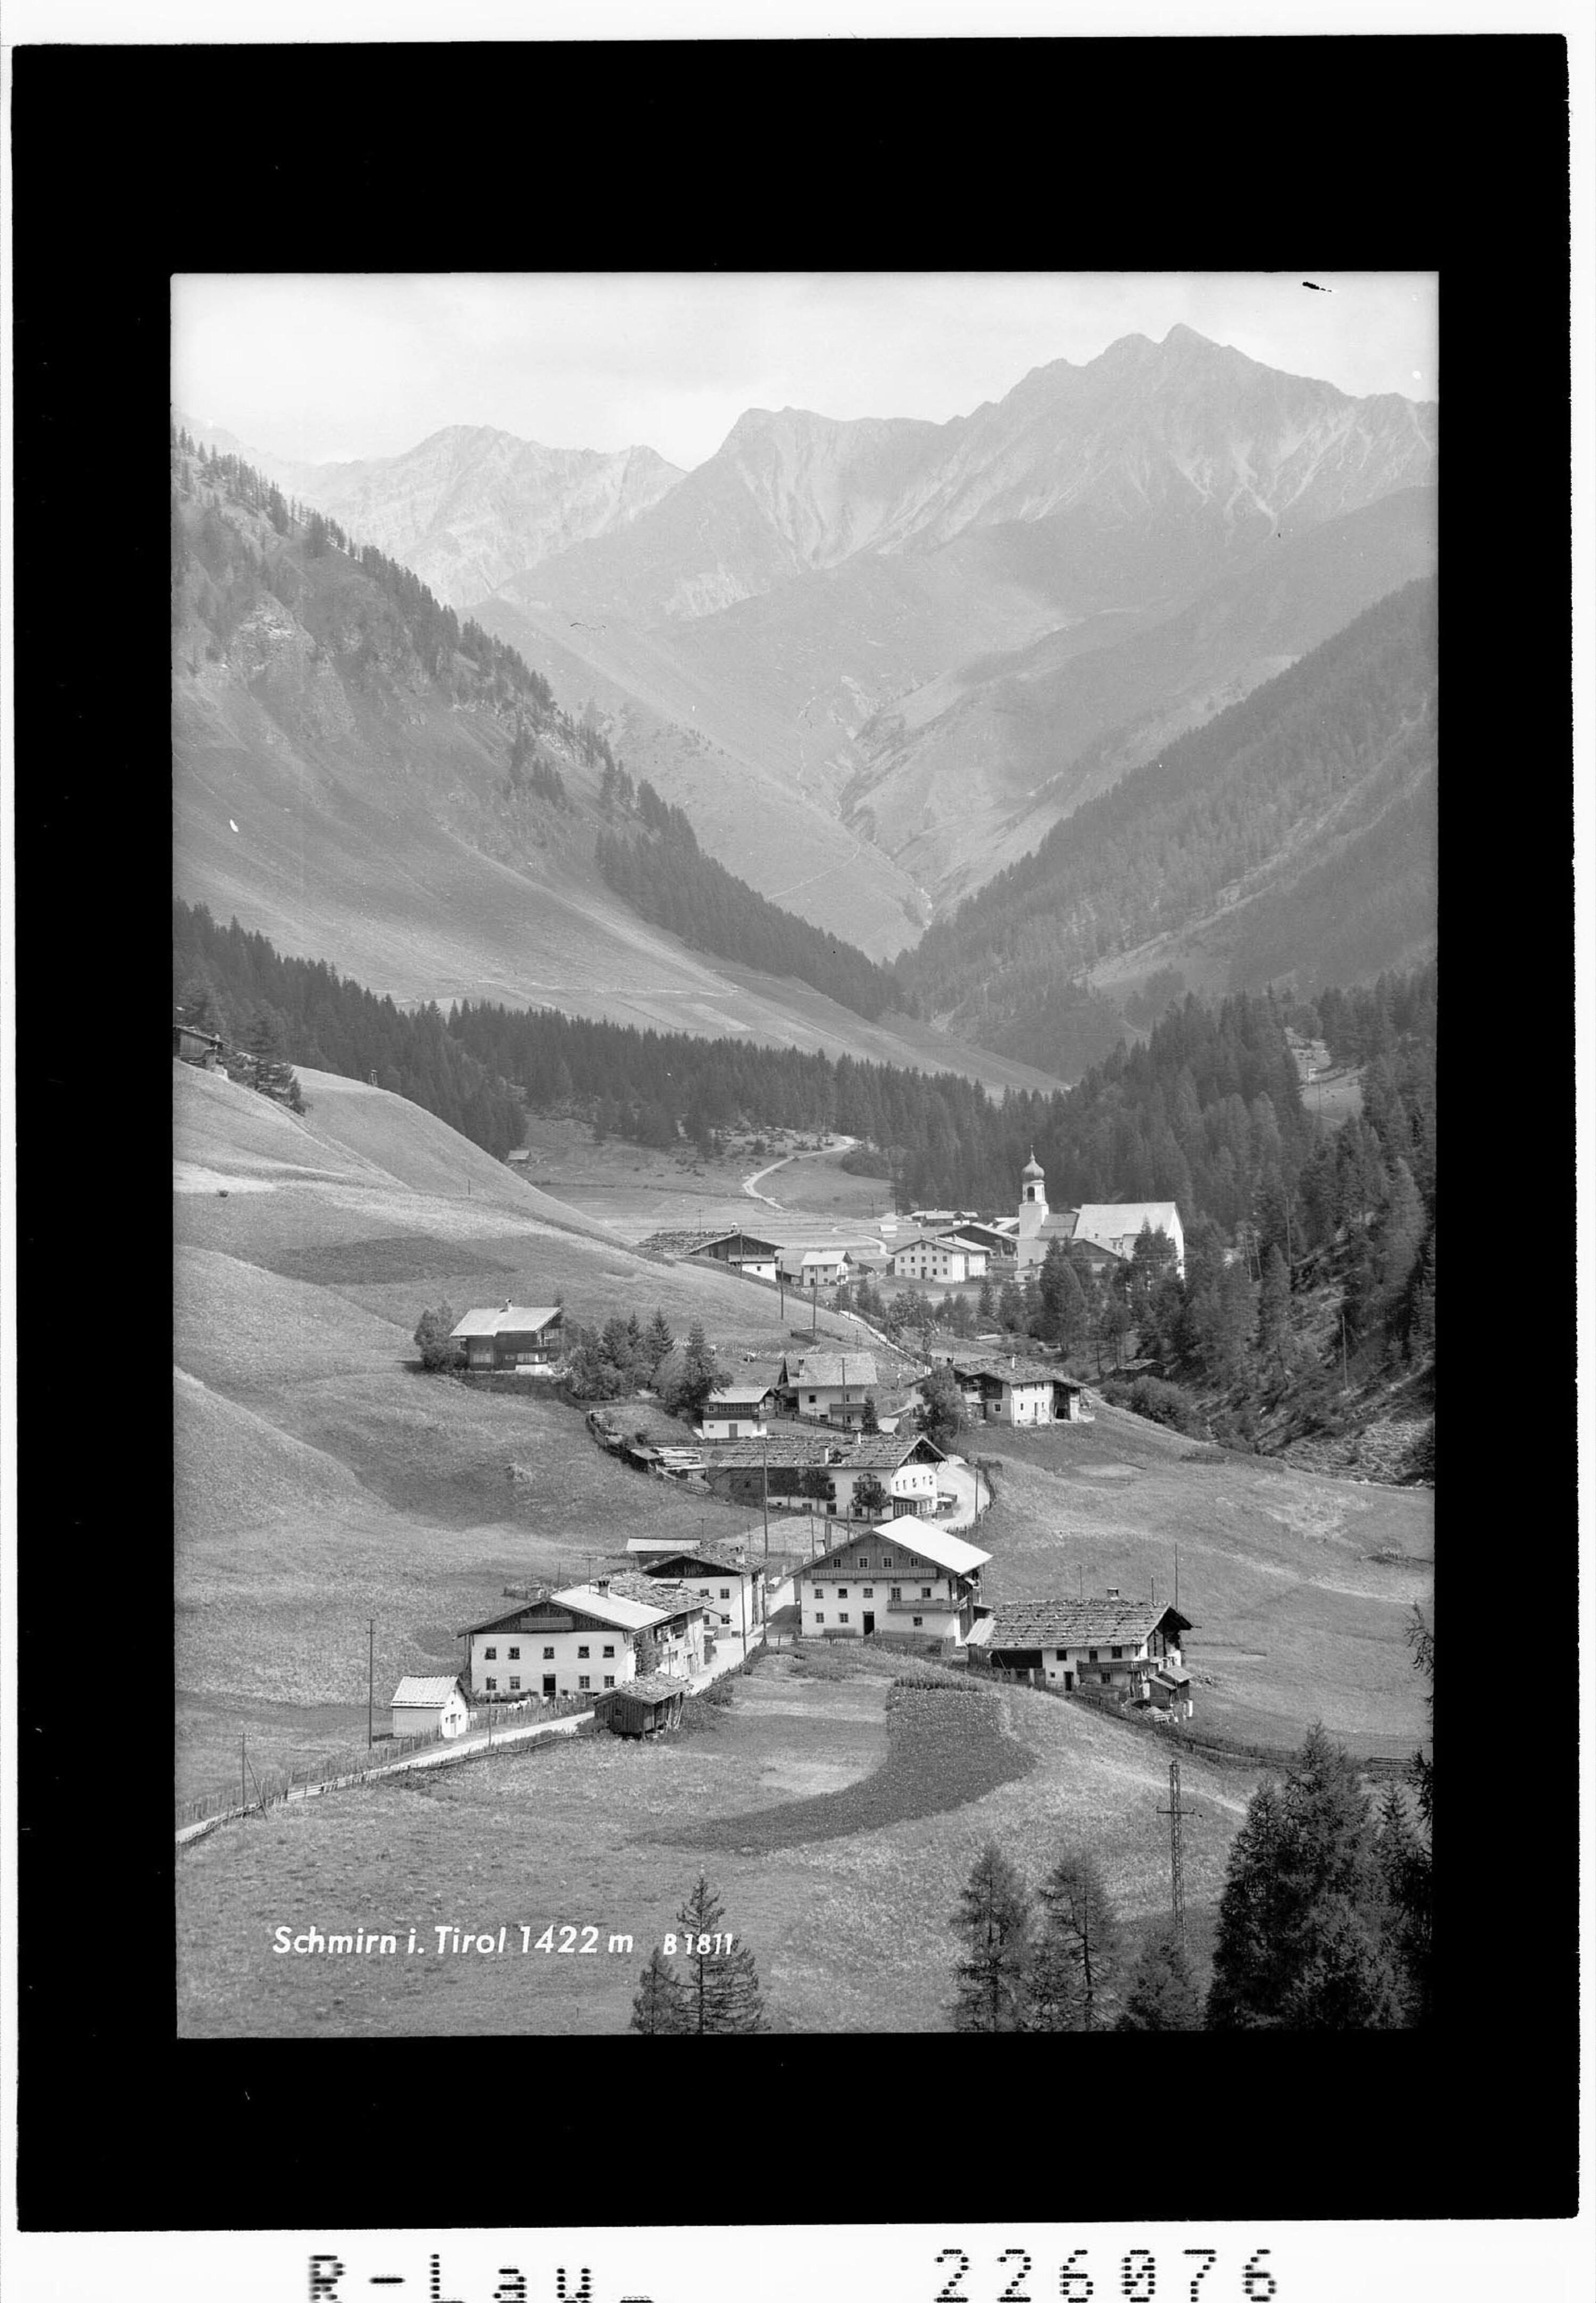 Schmirn in Tirol 1422 m></div>


    <hr>
    <div class=